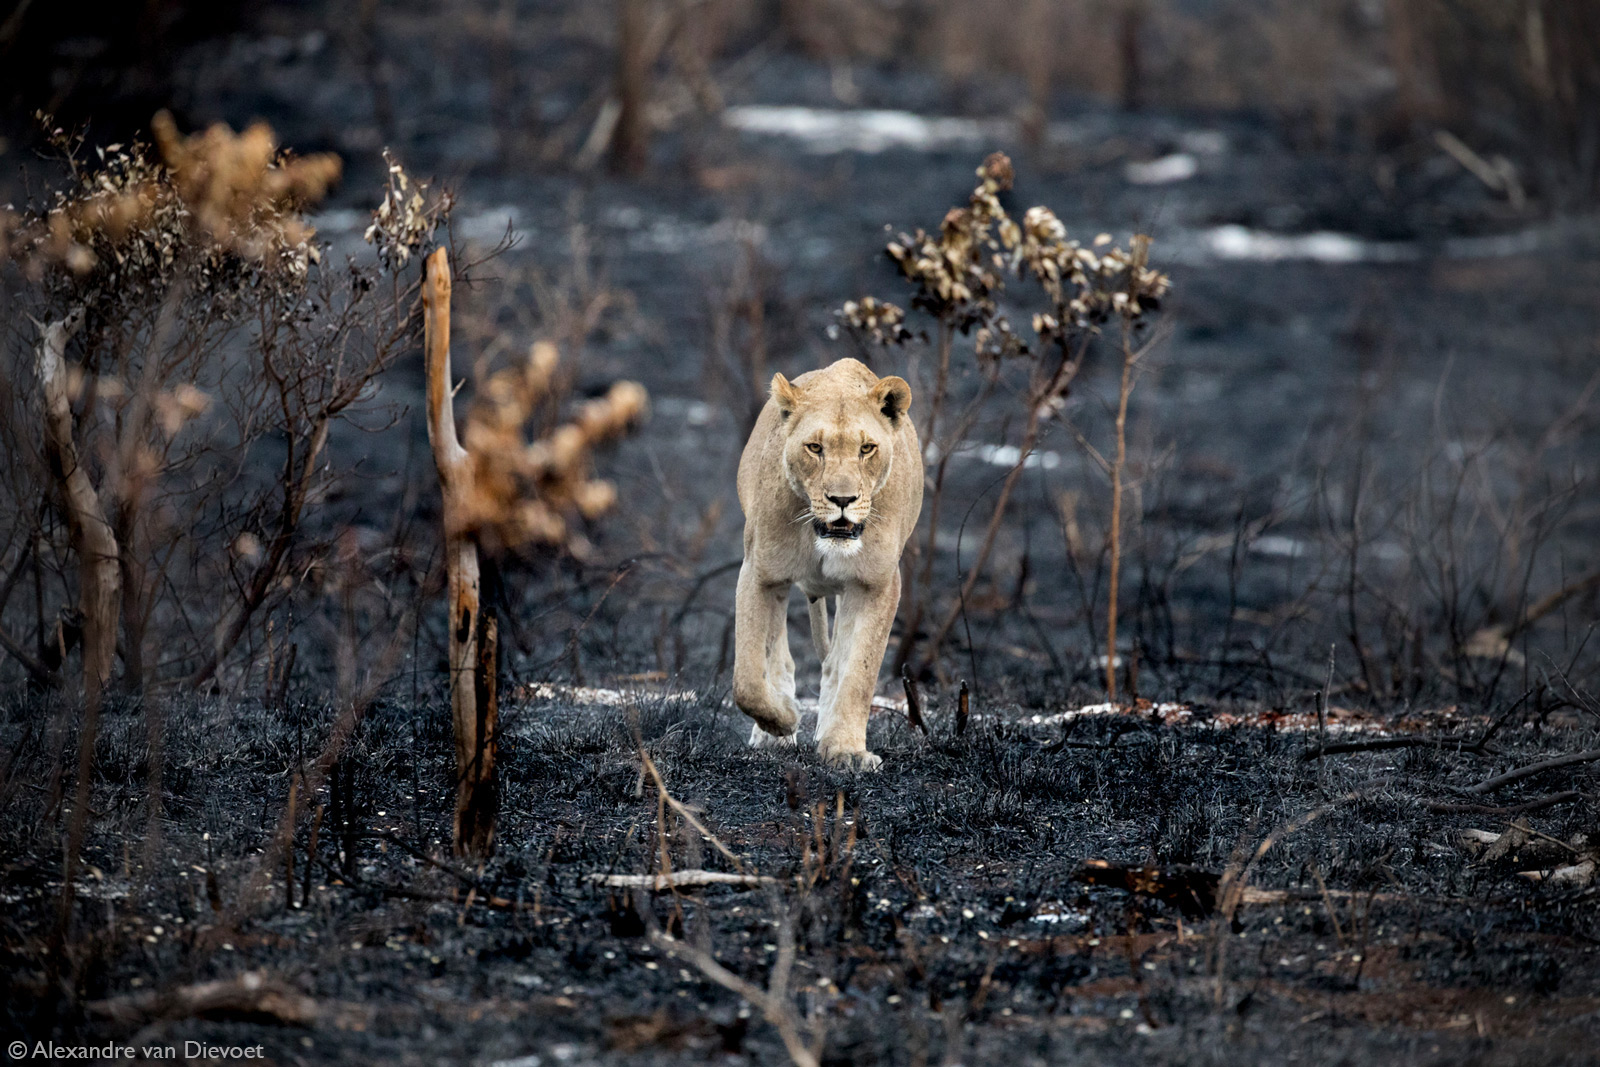 Alexandre-van-Dievoet-lioness-burnt-bush-Phinda-Game-Reserve-South-Africa.jpg